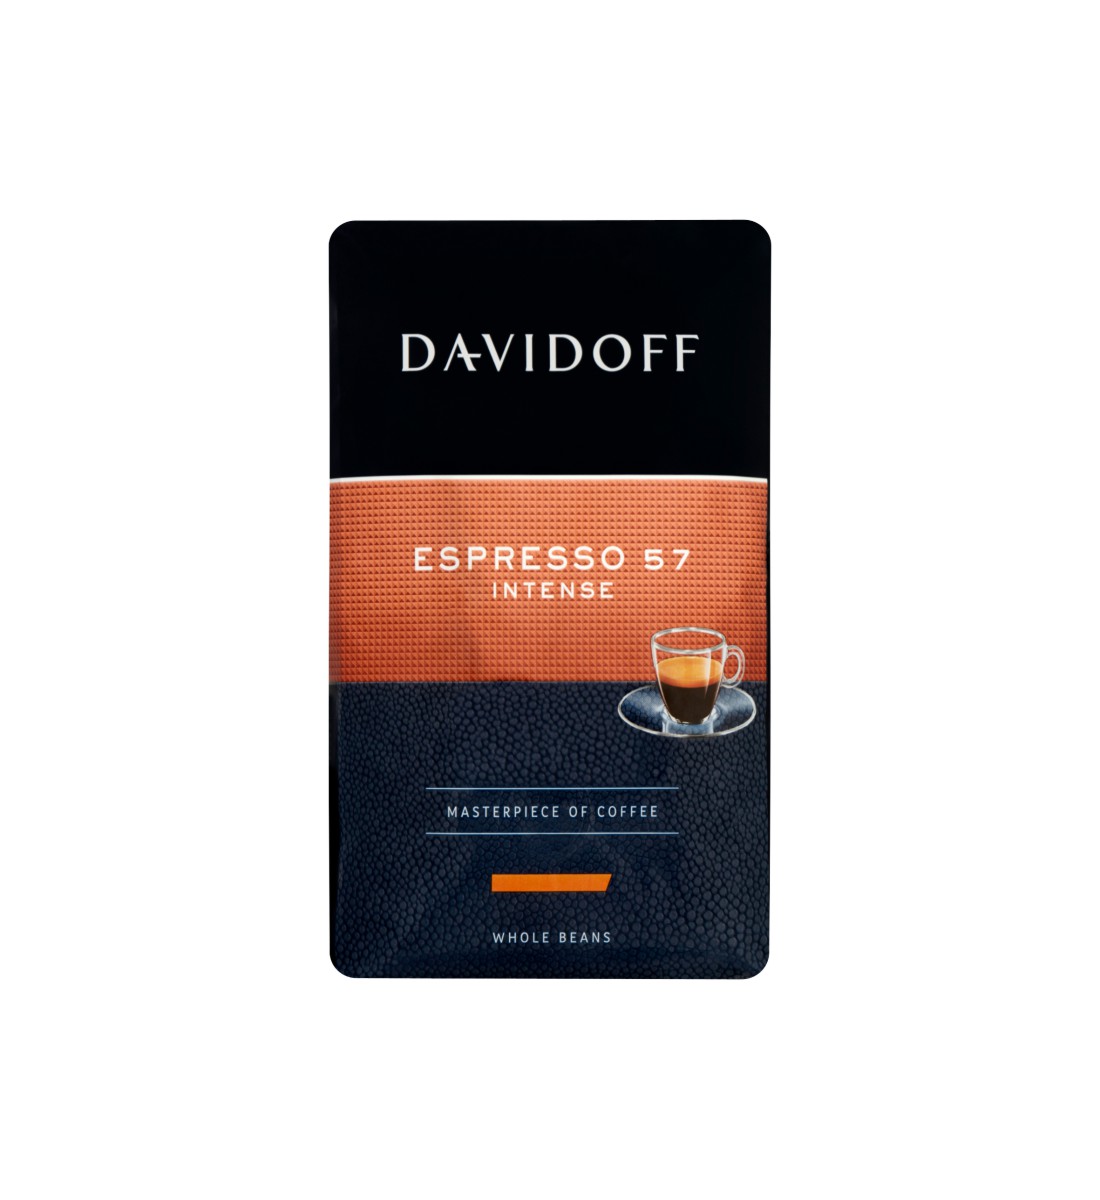 Davidoff Espresso 57 intense cafea boabe 500 g 500